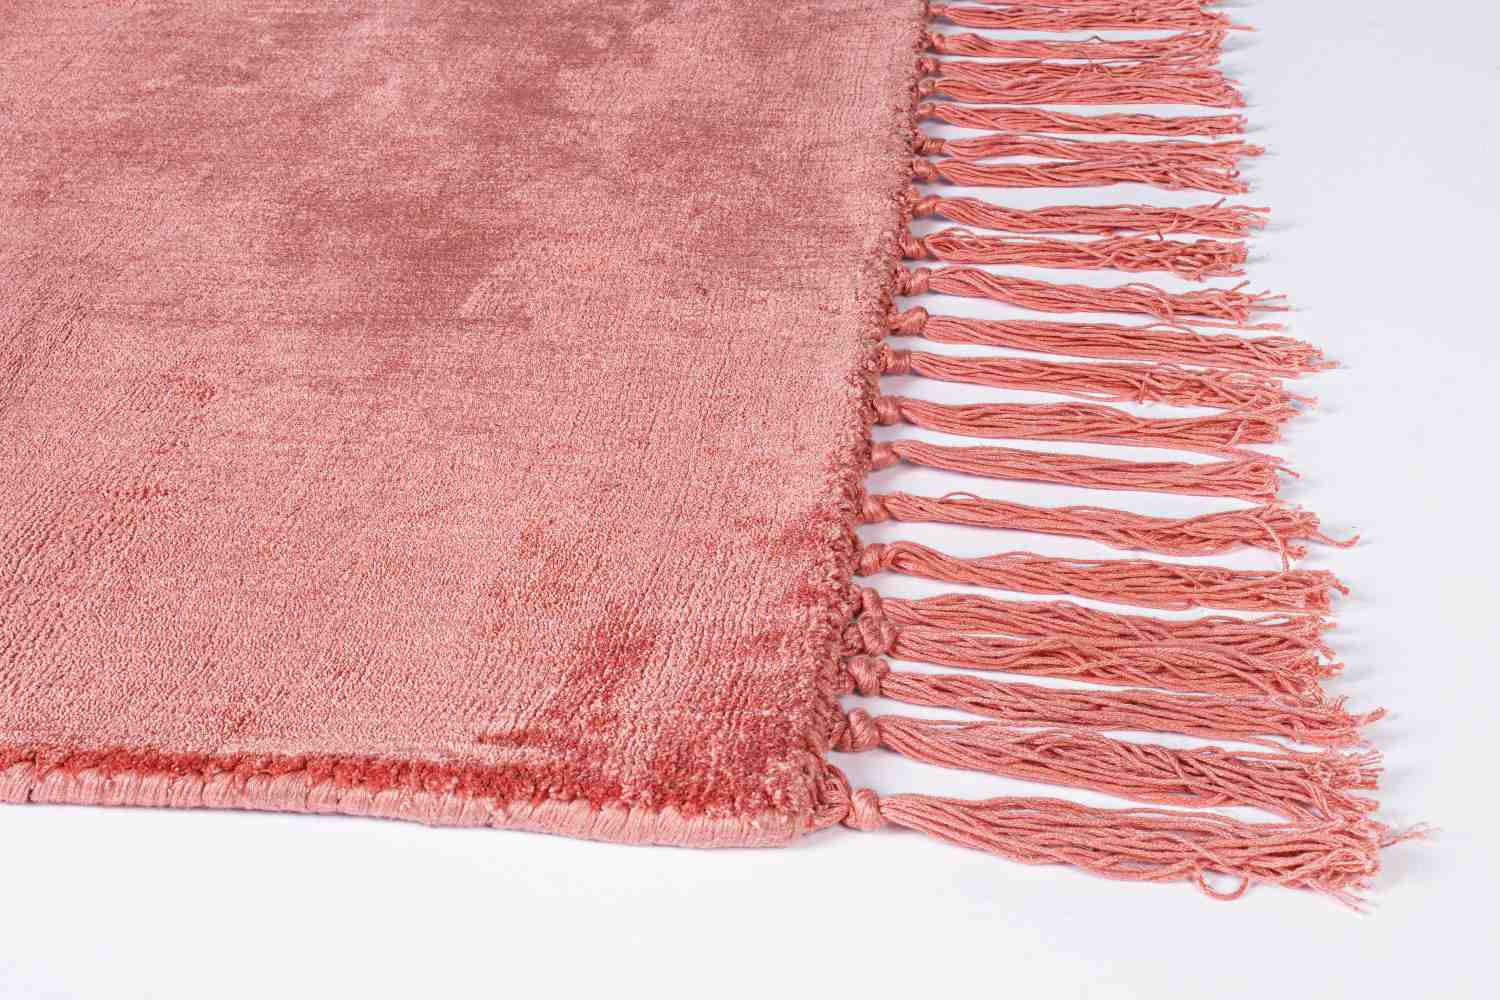 Der Teppich Belize überzeugt mit seinem klassischen Design. Gefertigt wurde die Vorderseite aus 100% Viskose und die Rückseite ist aus 100% Baumwolle. Der Teppich besitzt einen roten Farbton und die Maße von 140x200 cm.